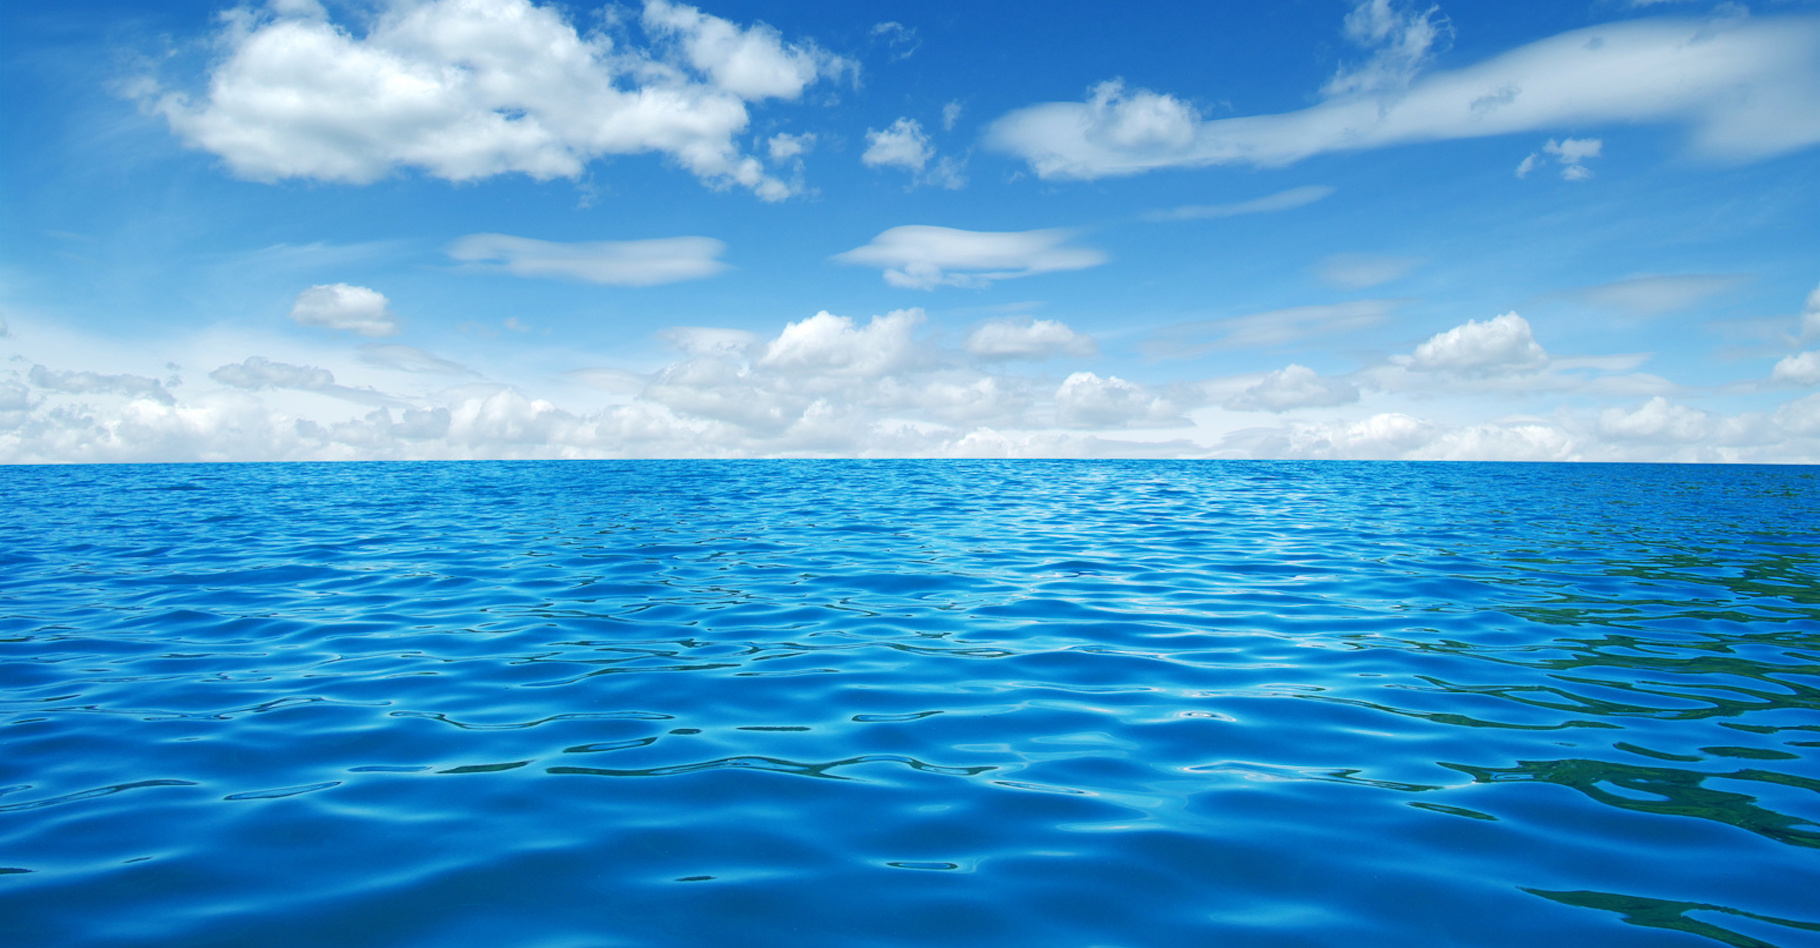 Si les réservoirs de gaz à effet de serre sous-marins venaient à être déséquilibrés par une augmentation de la température des océans, ils pourraient libérer une grande quantité de carbone dans l’atmosphère. © Alekss, Fotolia